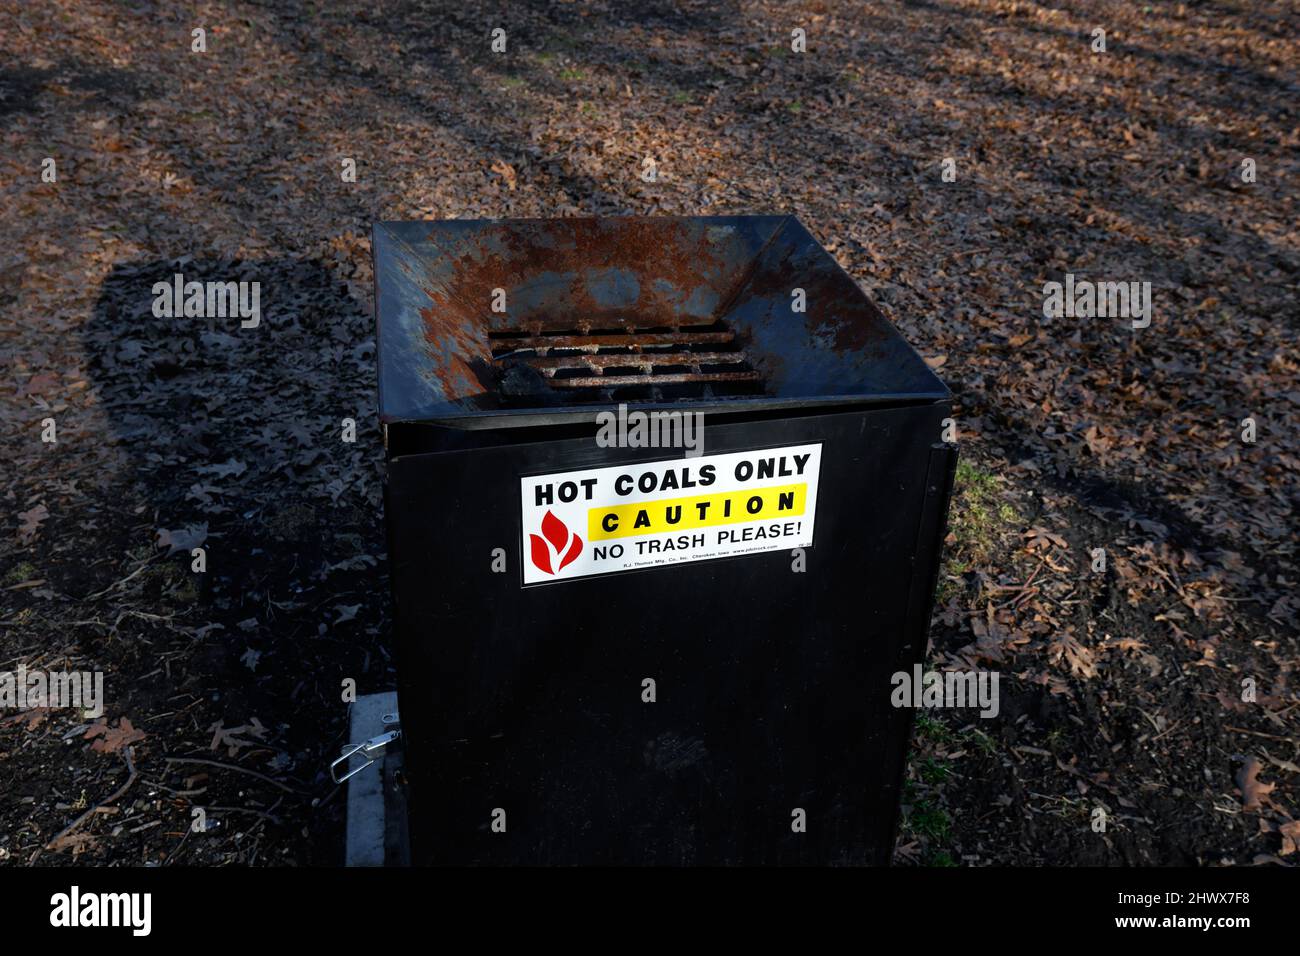 Un contenedor de eliminación de carbón caliente para la eliminación de carbones calientes, cenizas y carbón ubicado en una zona de barbacoa y picnics de un parque público en Brooklyn, NY. Foto de stock